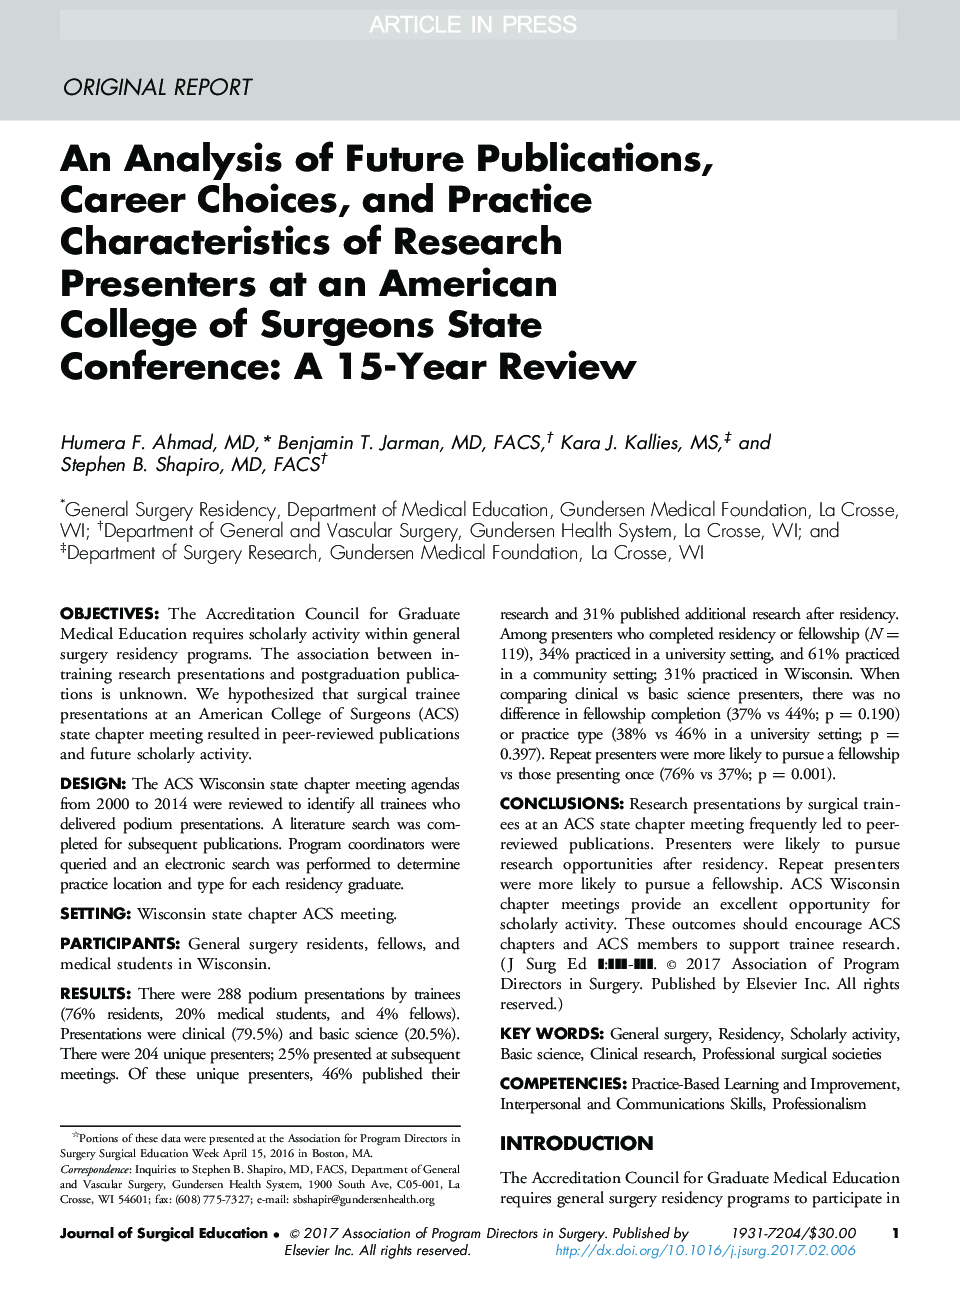 یک تجزیه و تحلیل انتشارات آینده، انتخاب شغلی و ویژگی های عملکرد پژوهشگران در کنگره کالج جراحان آمریکا: یک مرور 15 ساله 